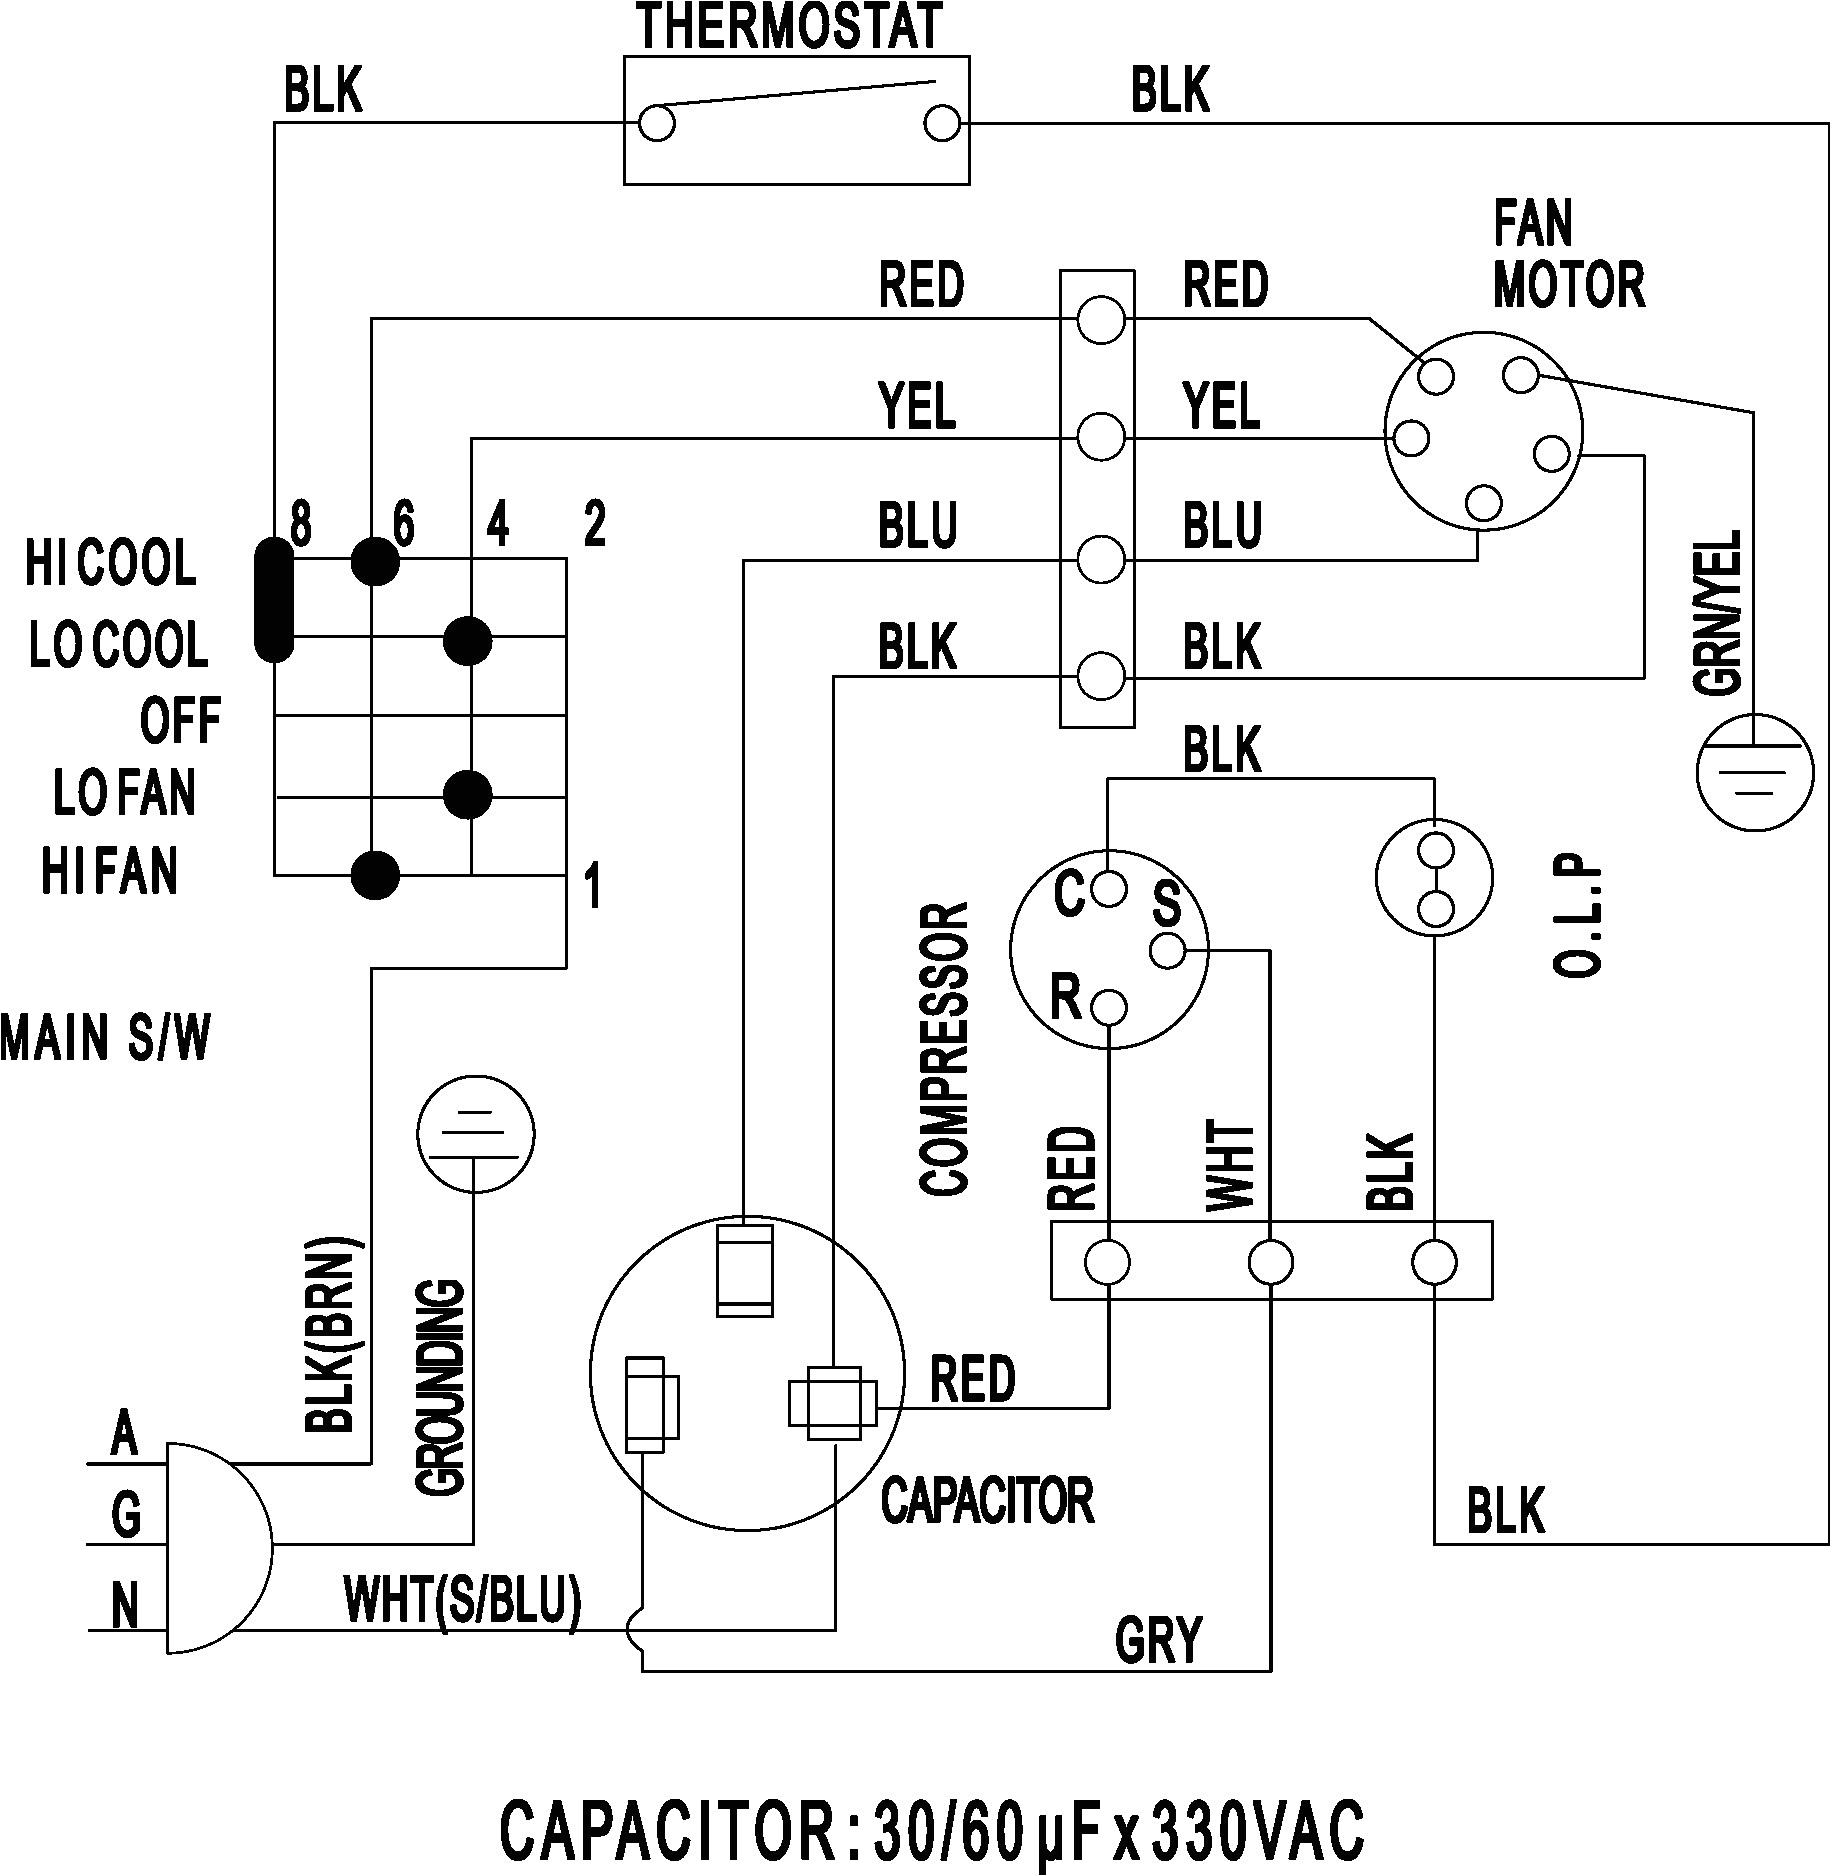 voltas split ac wiring diagram wiring diagram technic voltas air conditioner wiring diagram